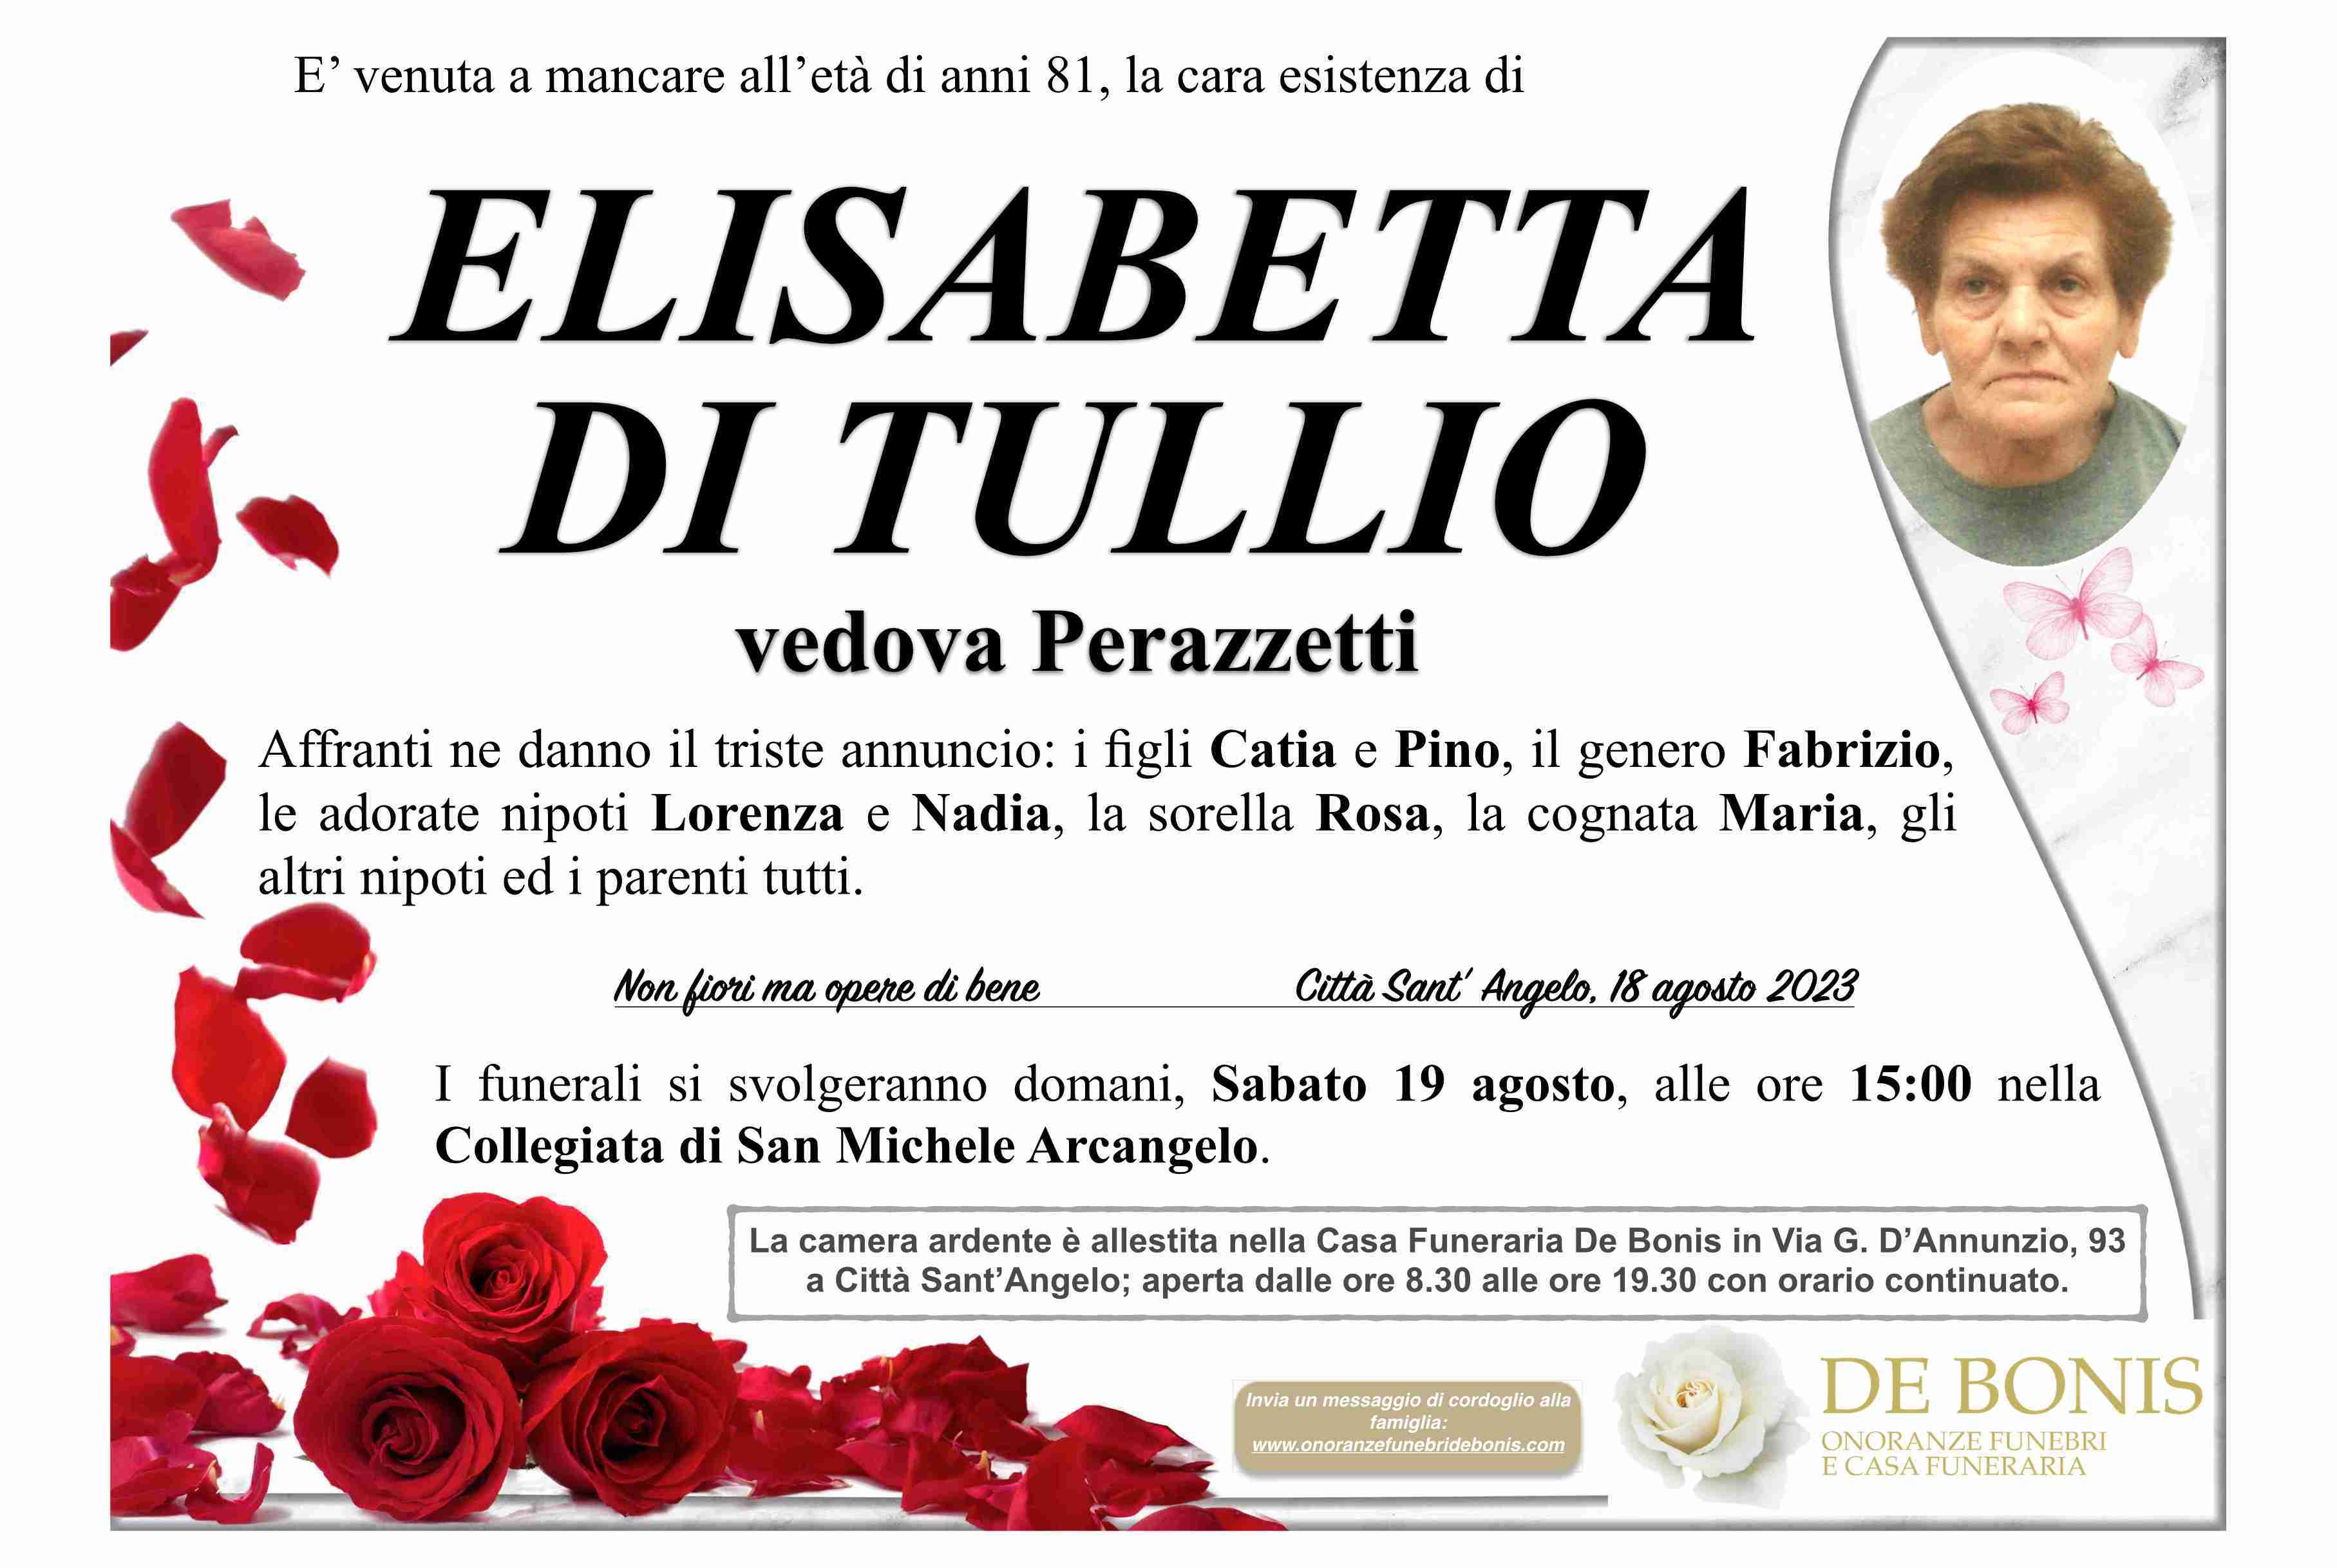 Elisabetta Di Tullio